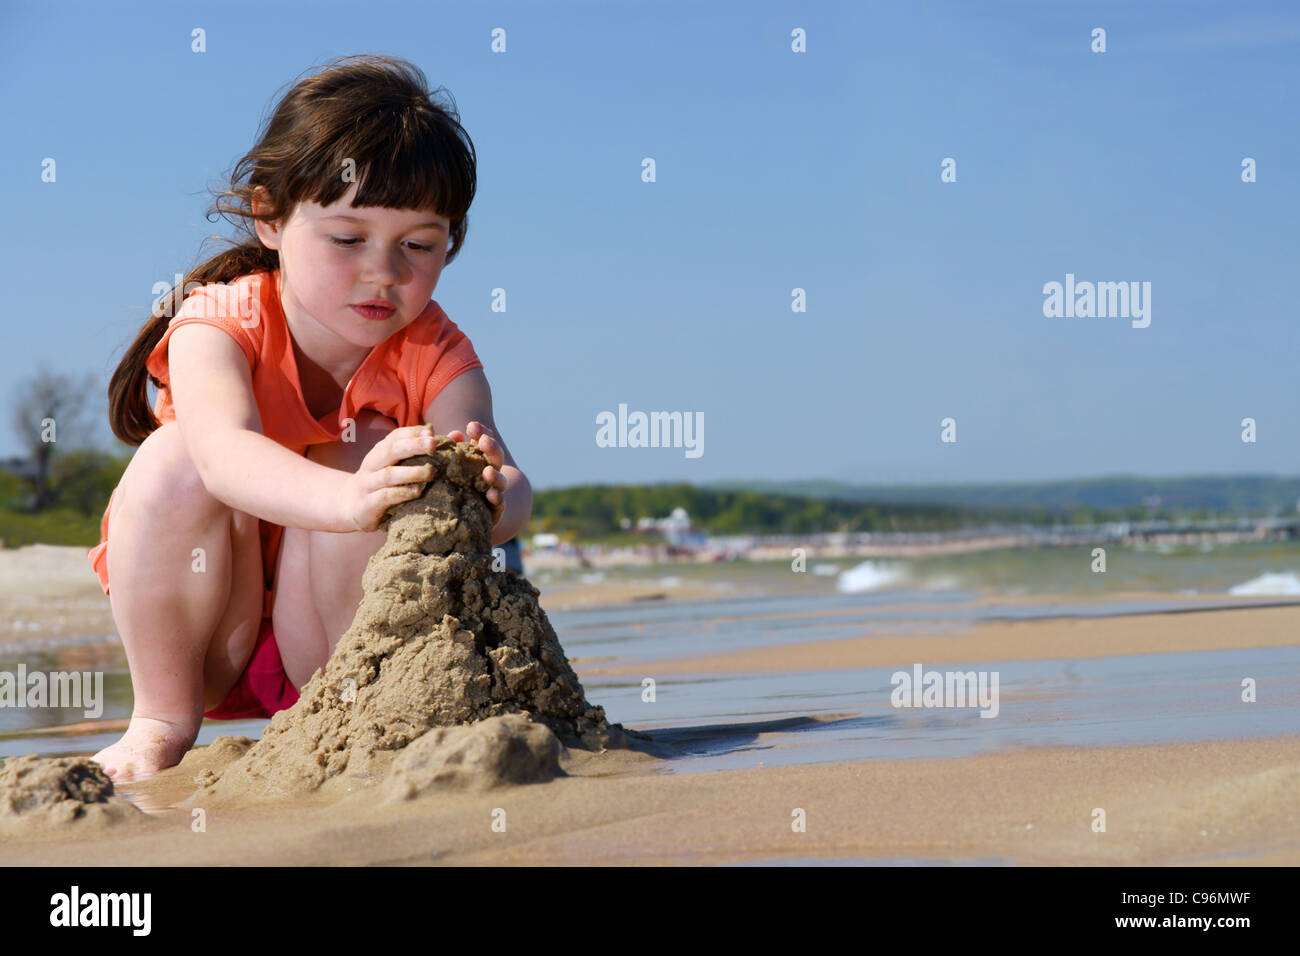 Kinder am Strand, junge Mädchen spielen In den Sand, Sandburgen zu